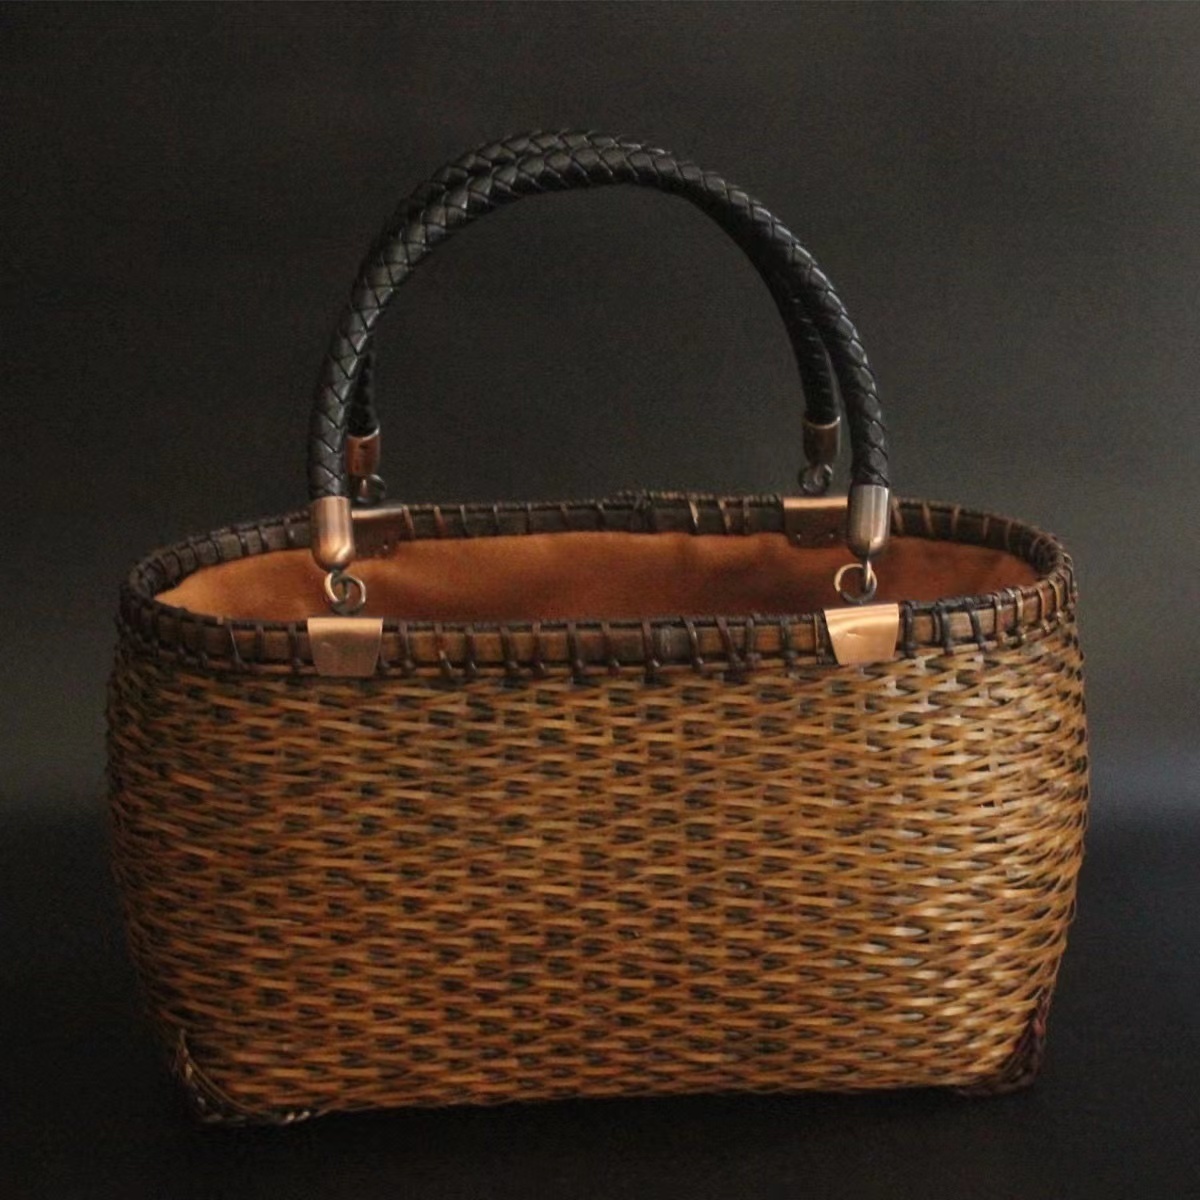 新入荷★自然竹編み上げカゴバック  手作りバスケット ナチュラル買い物カゴ 収納バッグの画像3